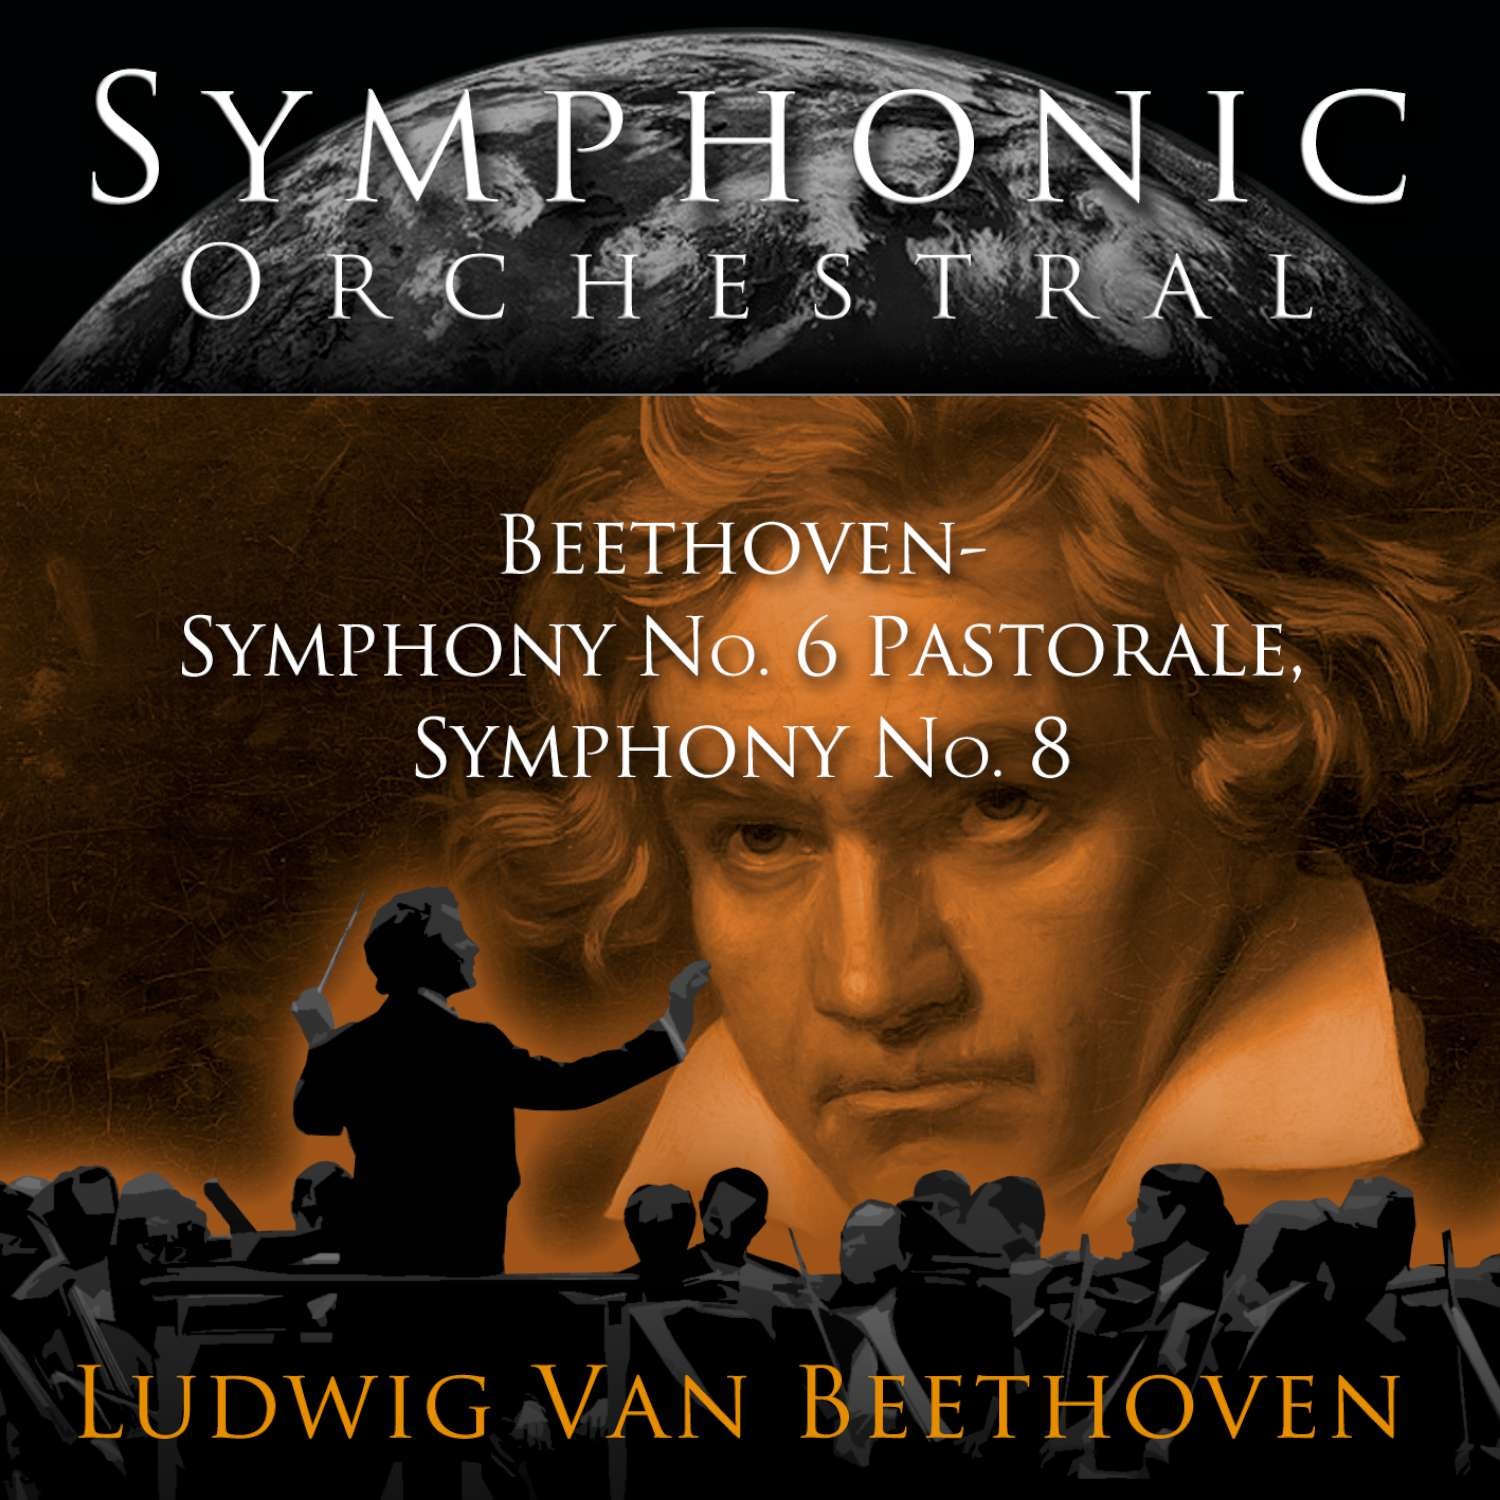 Symphonic Orchestral - Beethoven: Symphony No.6 Pastorale, Symphony No.8